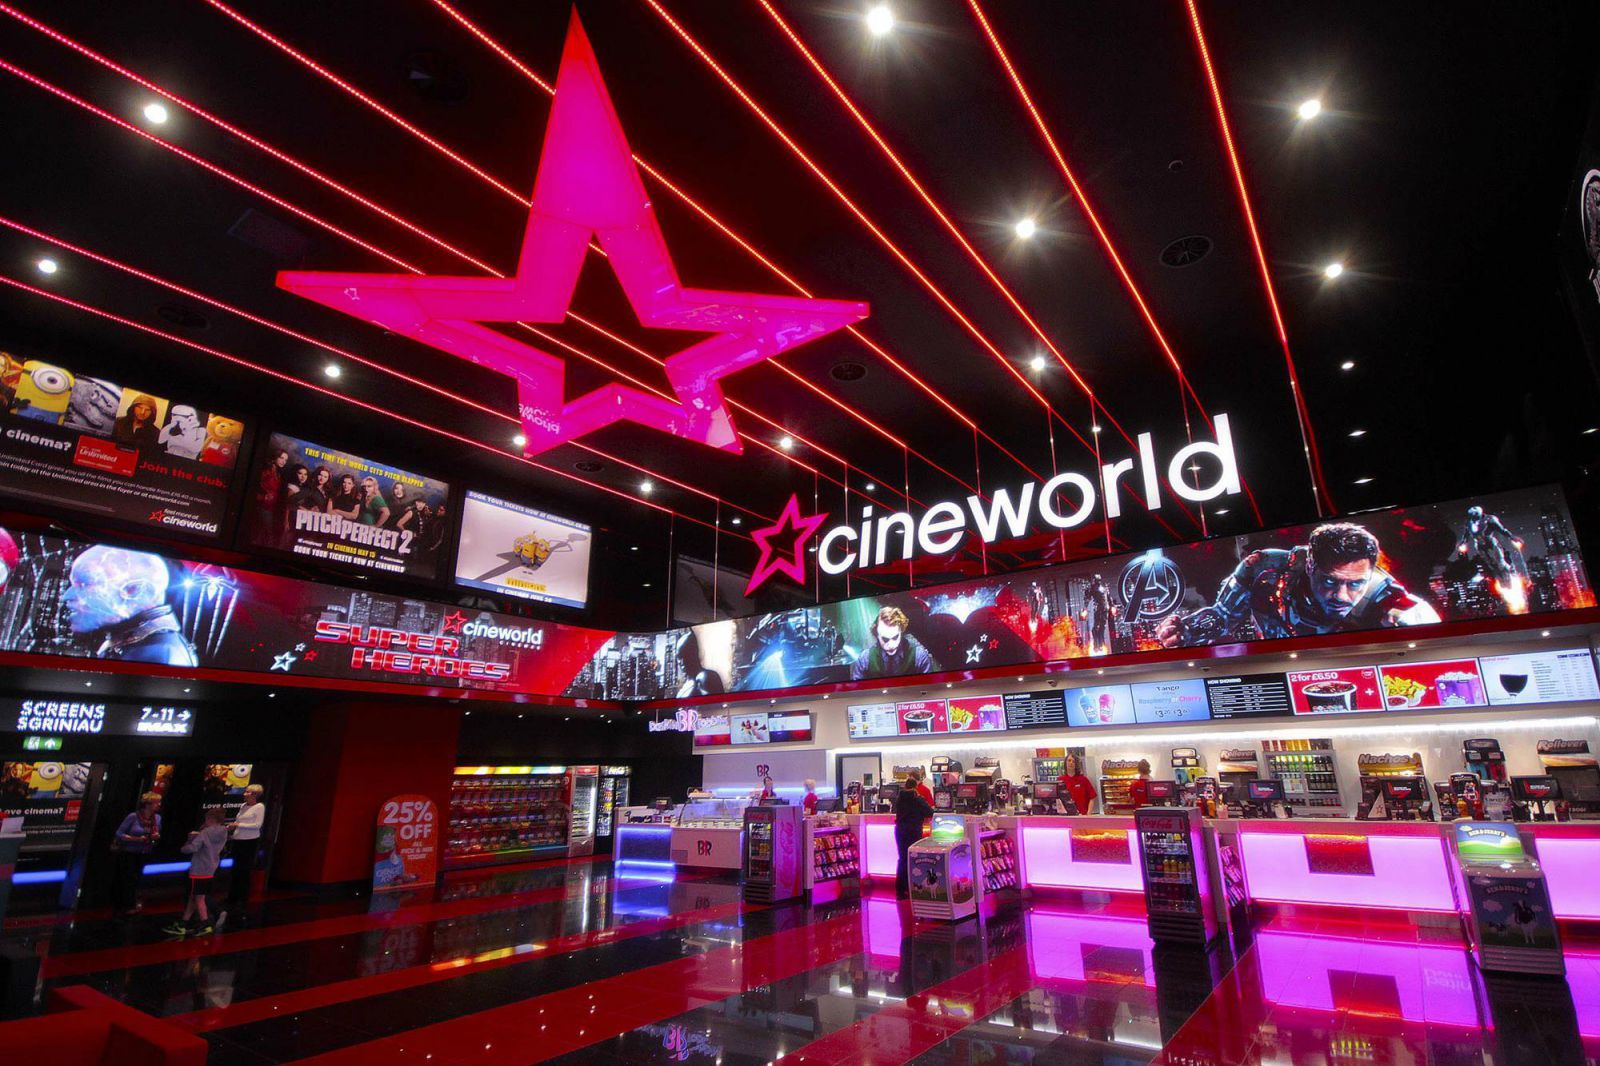 Liệu chuỗi rạp chiếu phim như Cineworld sẽ còn tồn tại theo đúng nghĩa của nó?